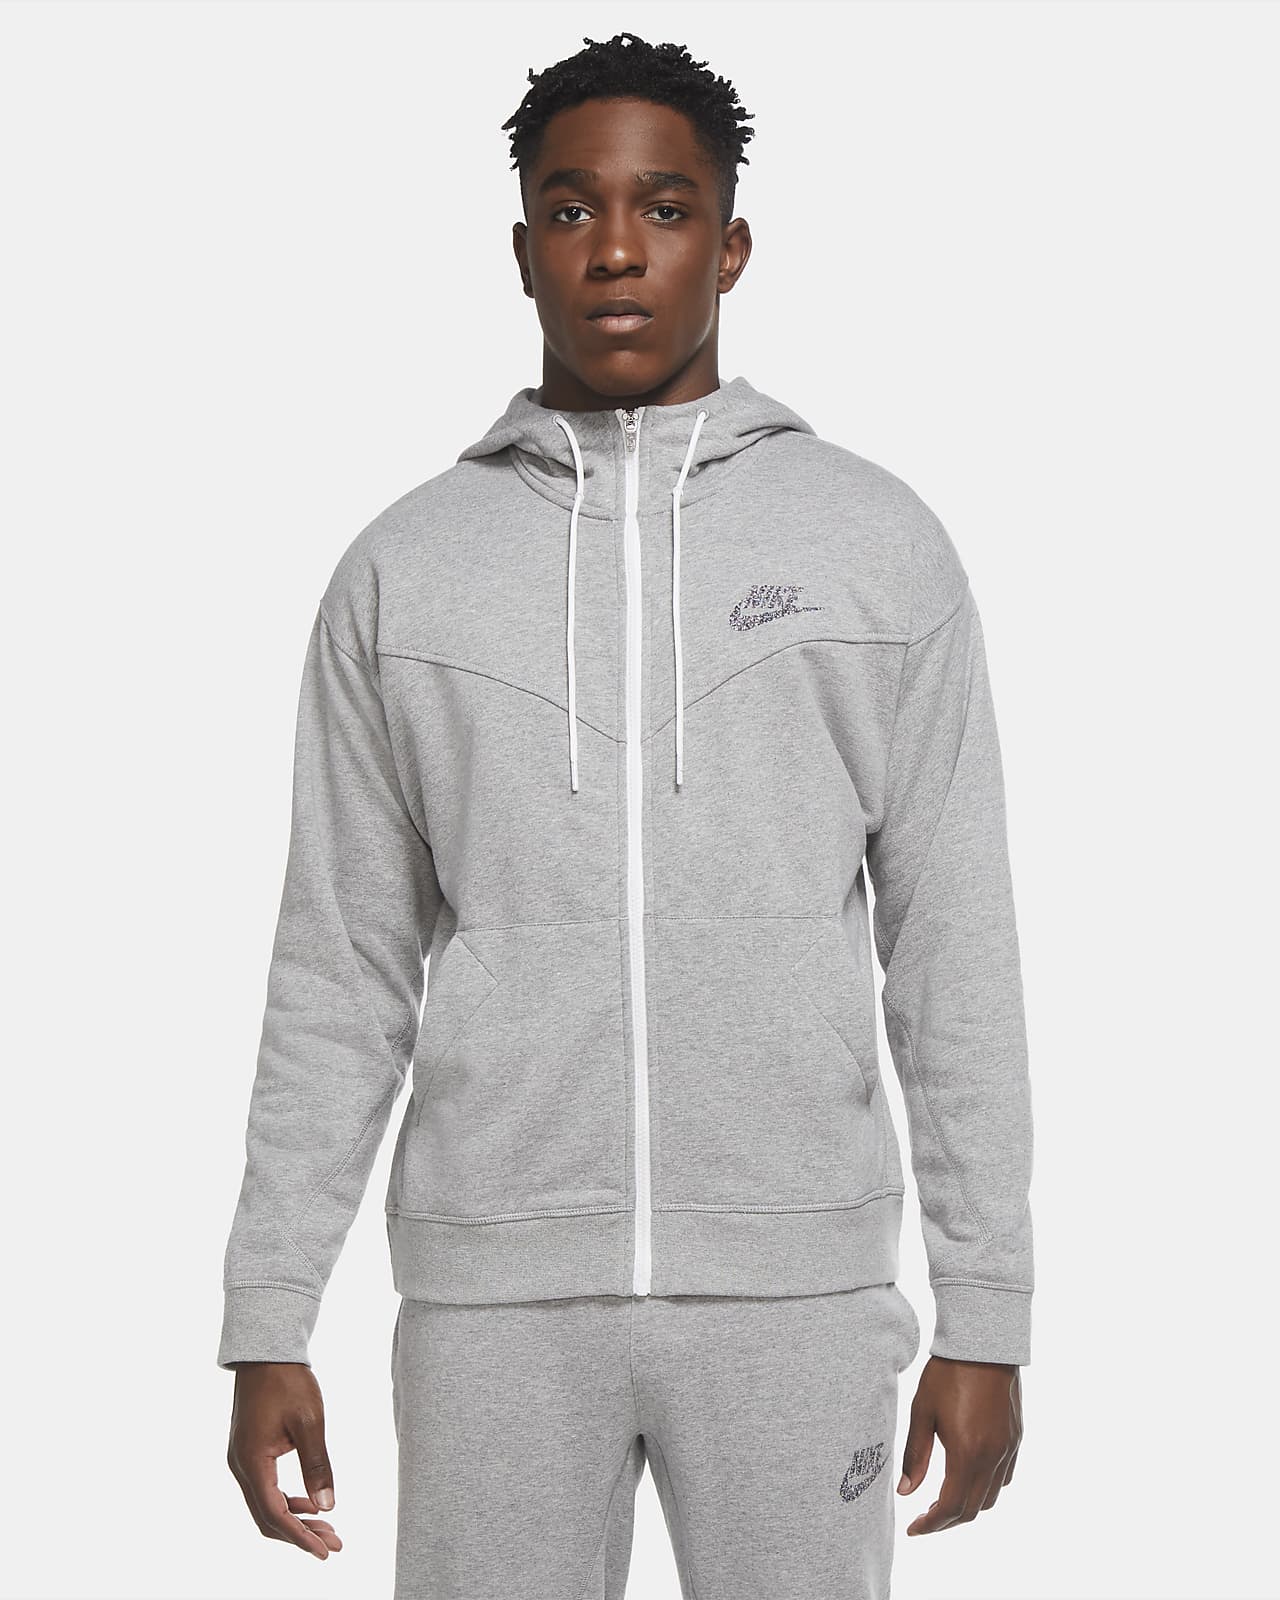 nike grey mens hoodie